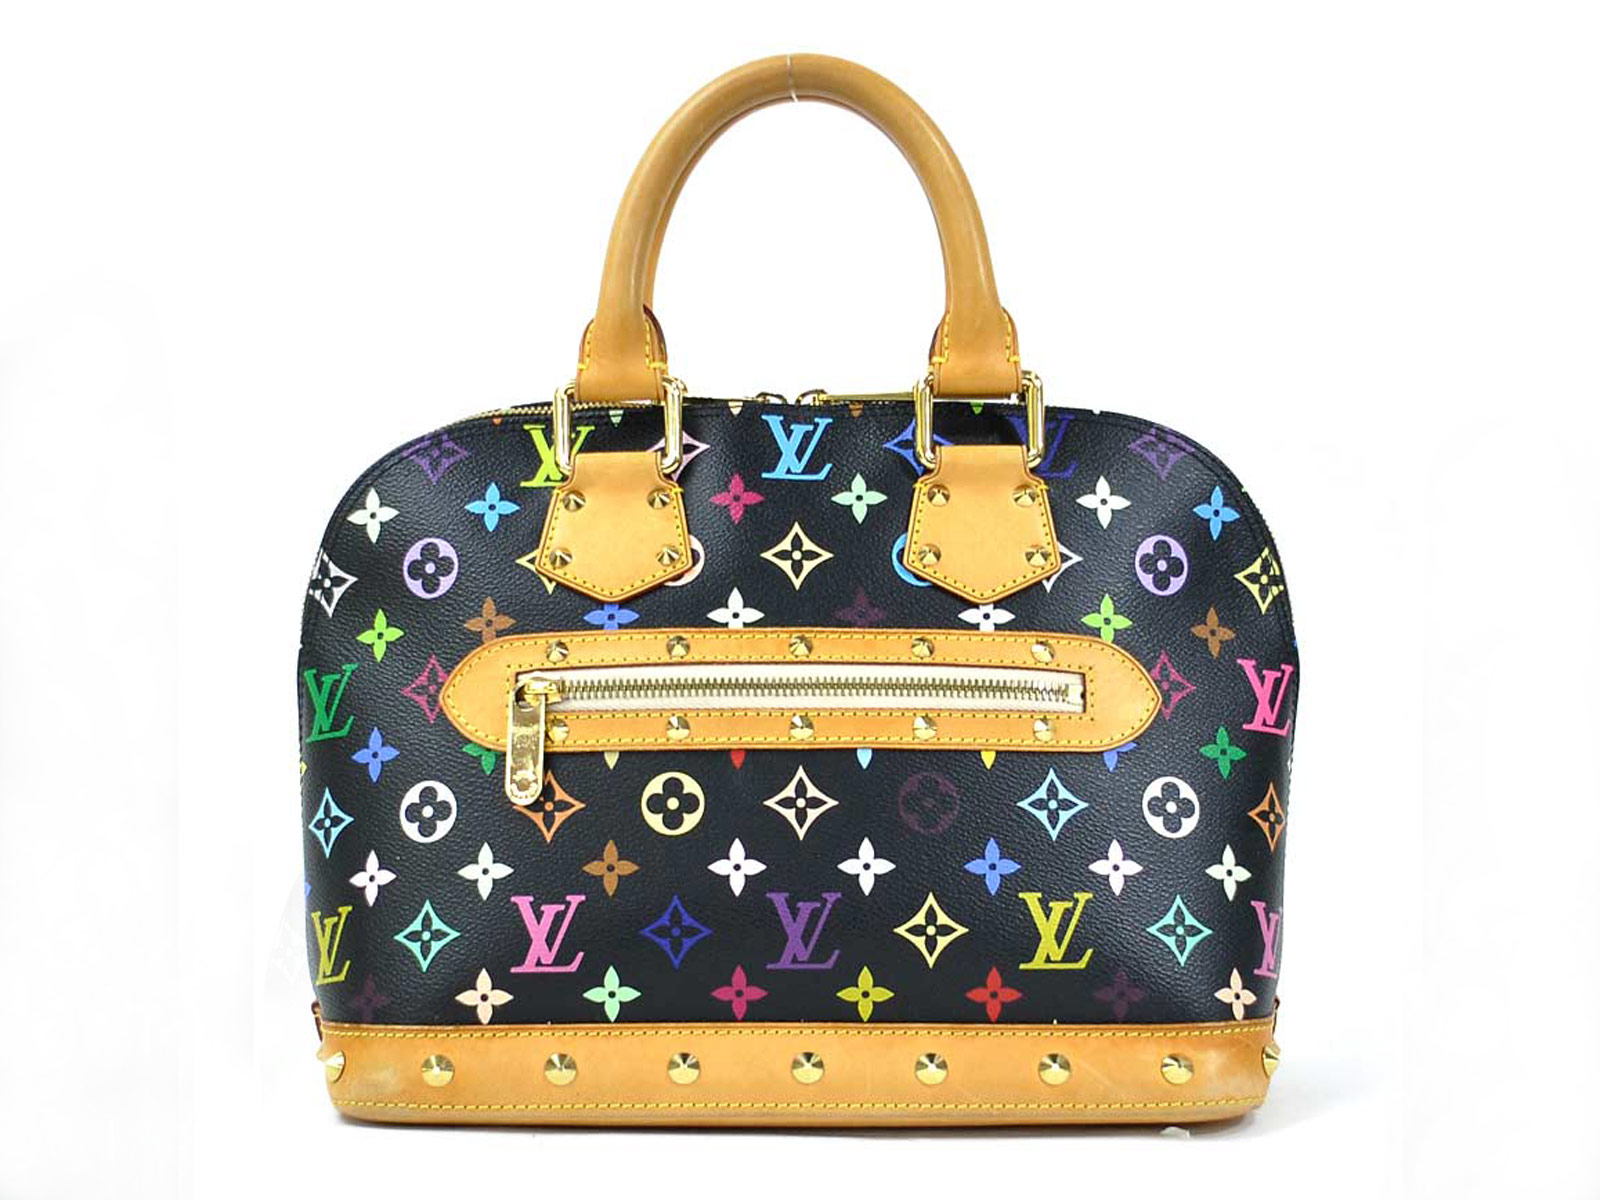 Auth Louis Vuitton Multicolor Monogram Alma PM Handbag Black/Multicolor - 98142c | eBay